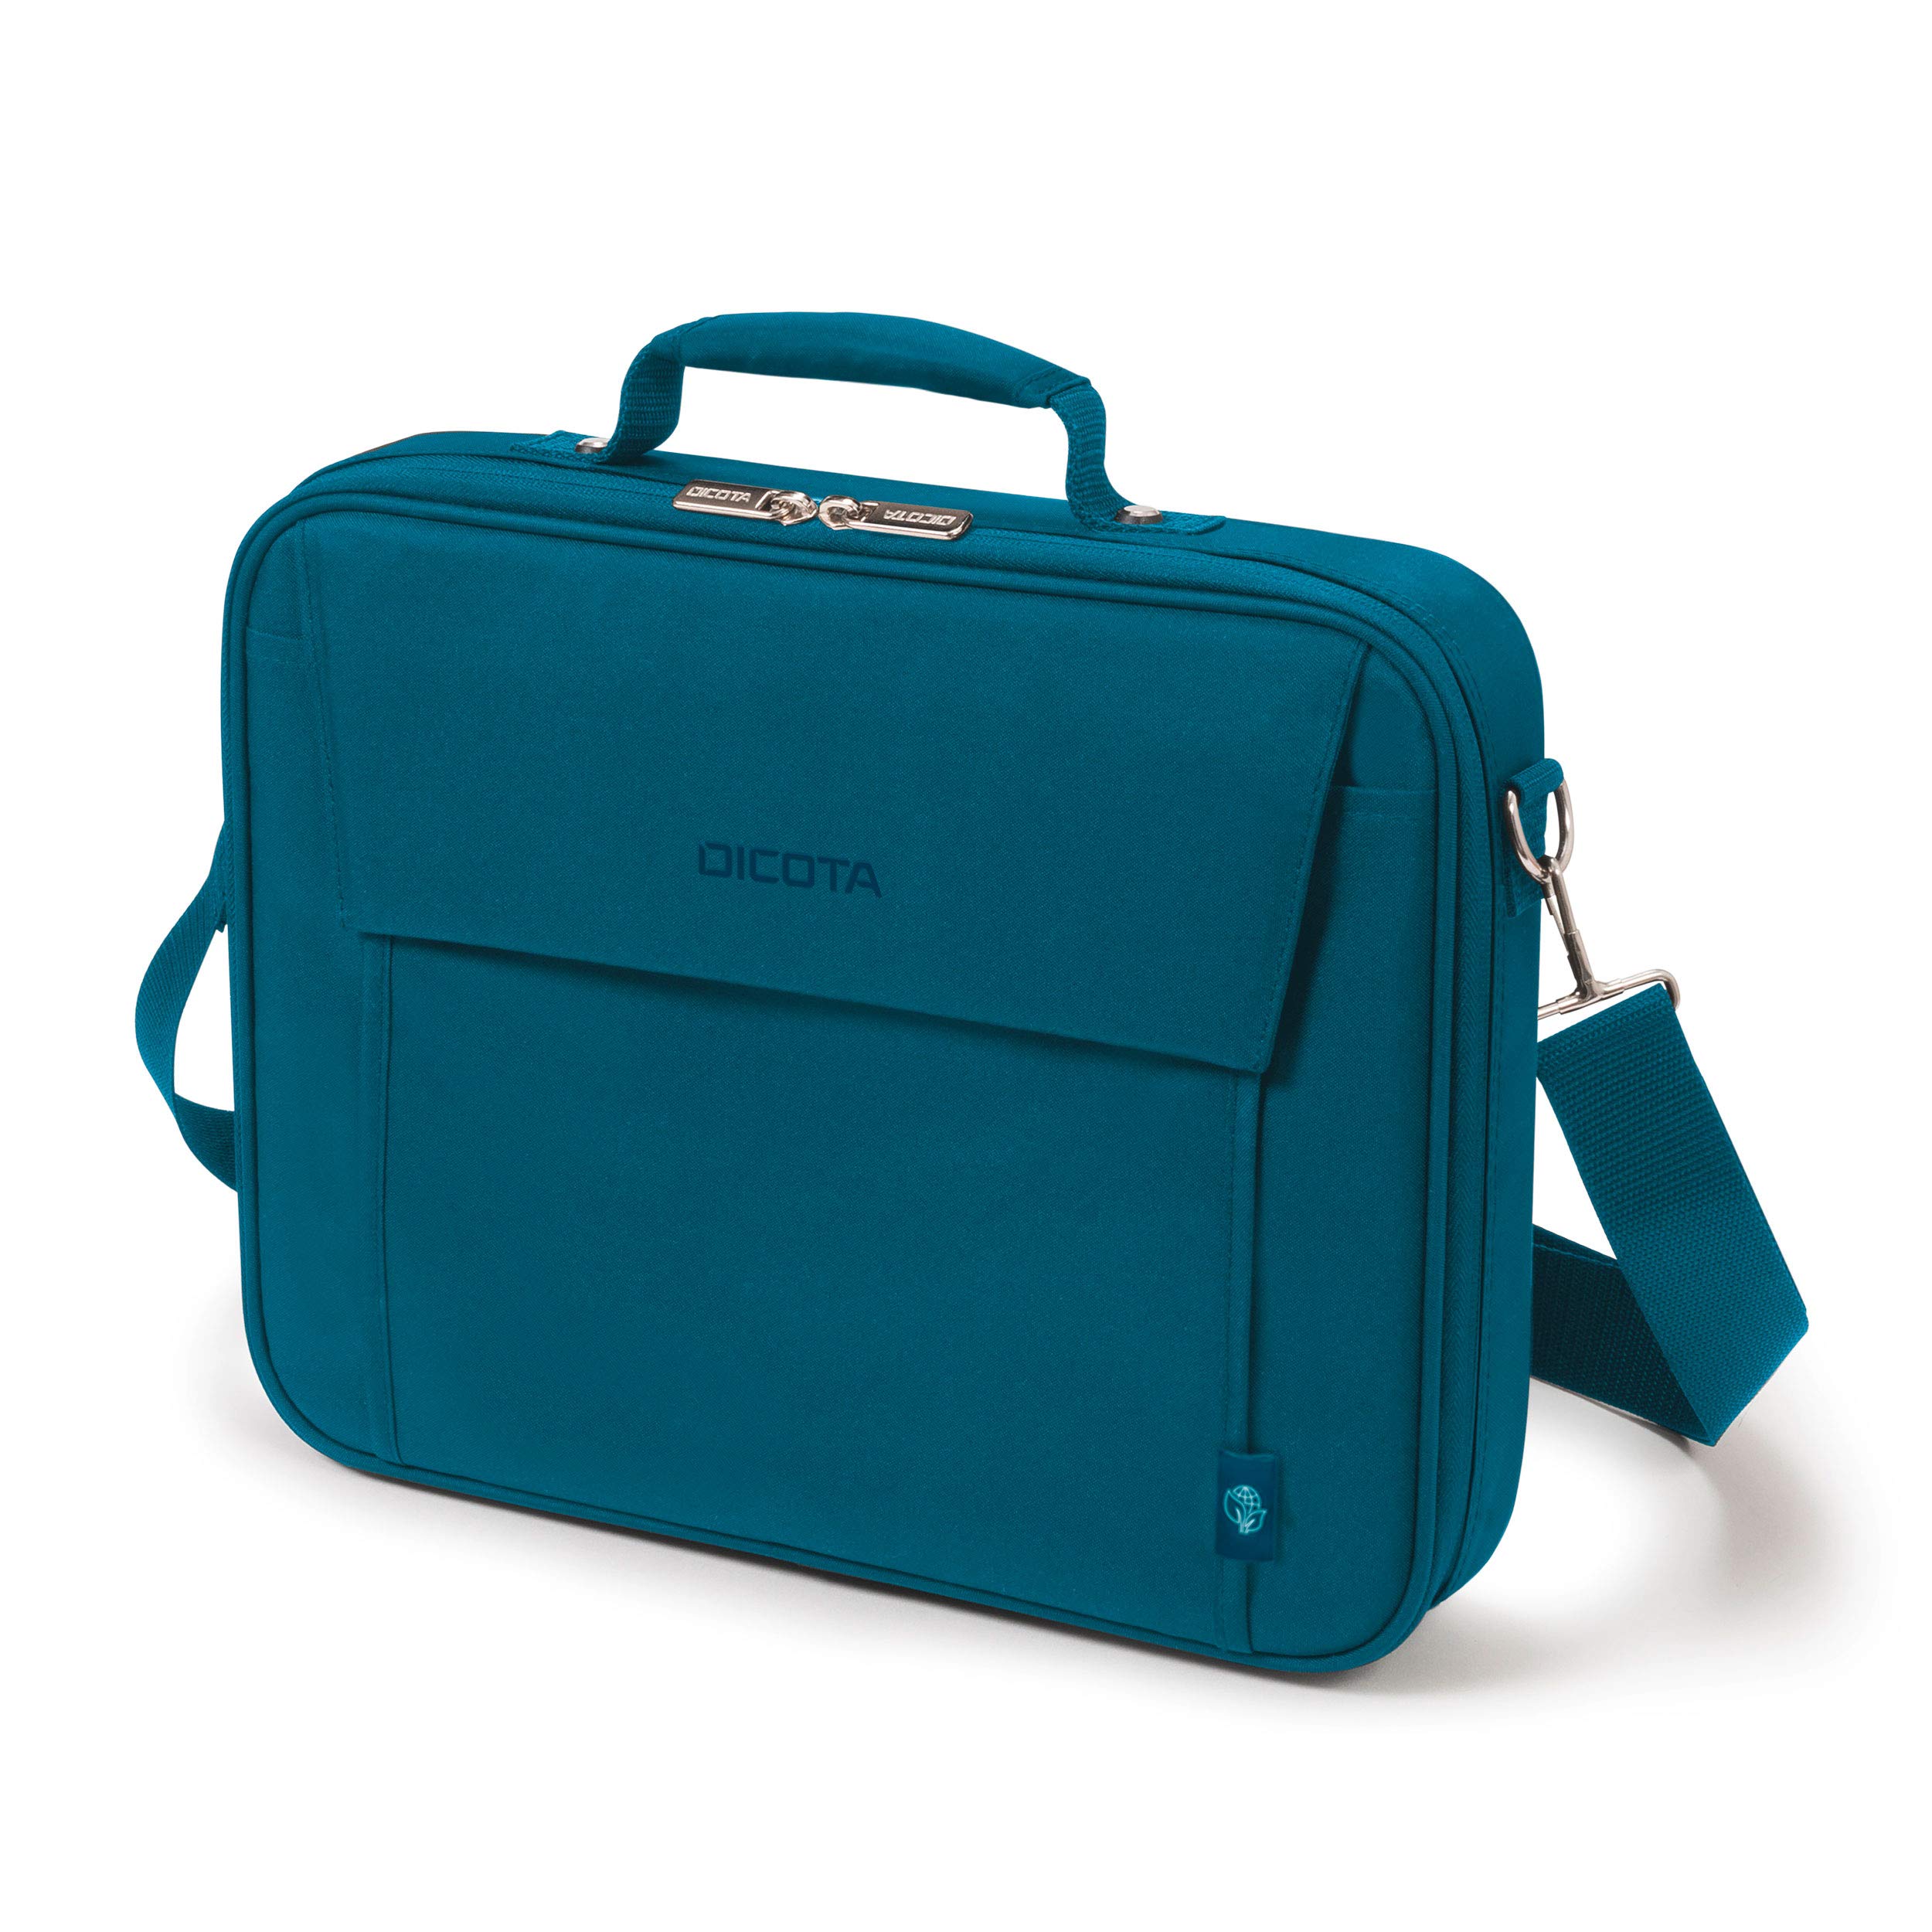 DICOTA Multi Base 14-15.6 – leichte Notebooktasche mit Schutzpolsterung, blau